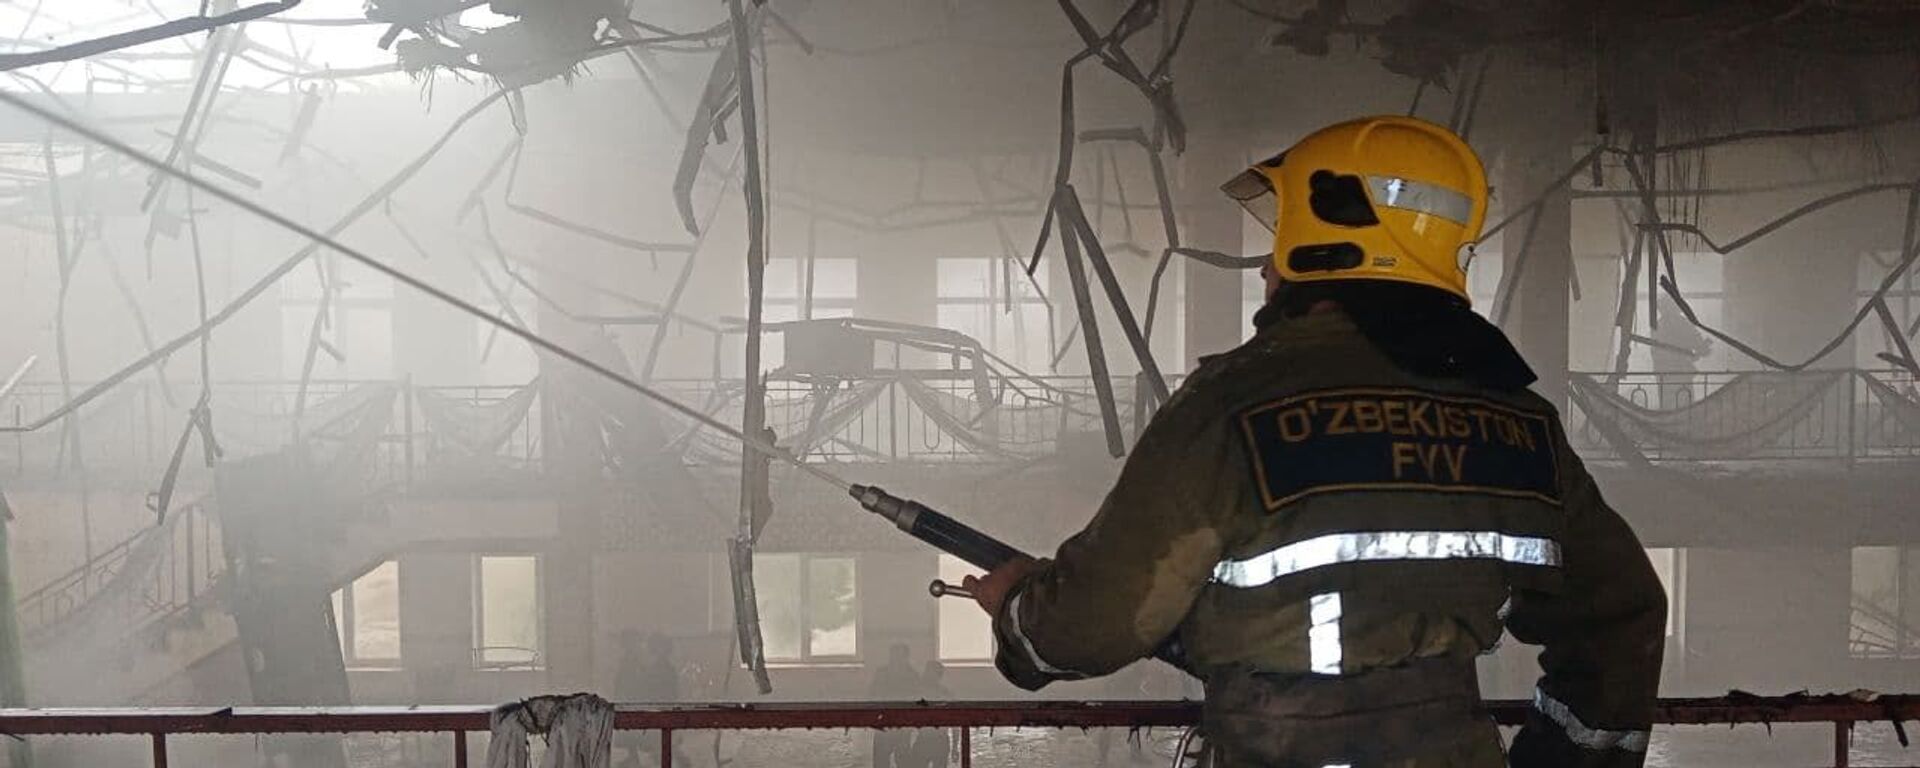 Спасатели МЧС ликвидировали пожар, вспыхнувший в одном из ресторанов Самаркандской области - Sputnik Ўзбекистон, 1920, 08.06.2021